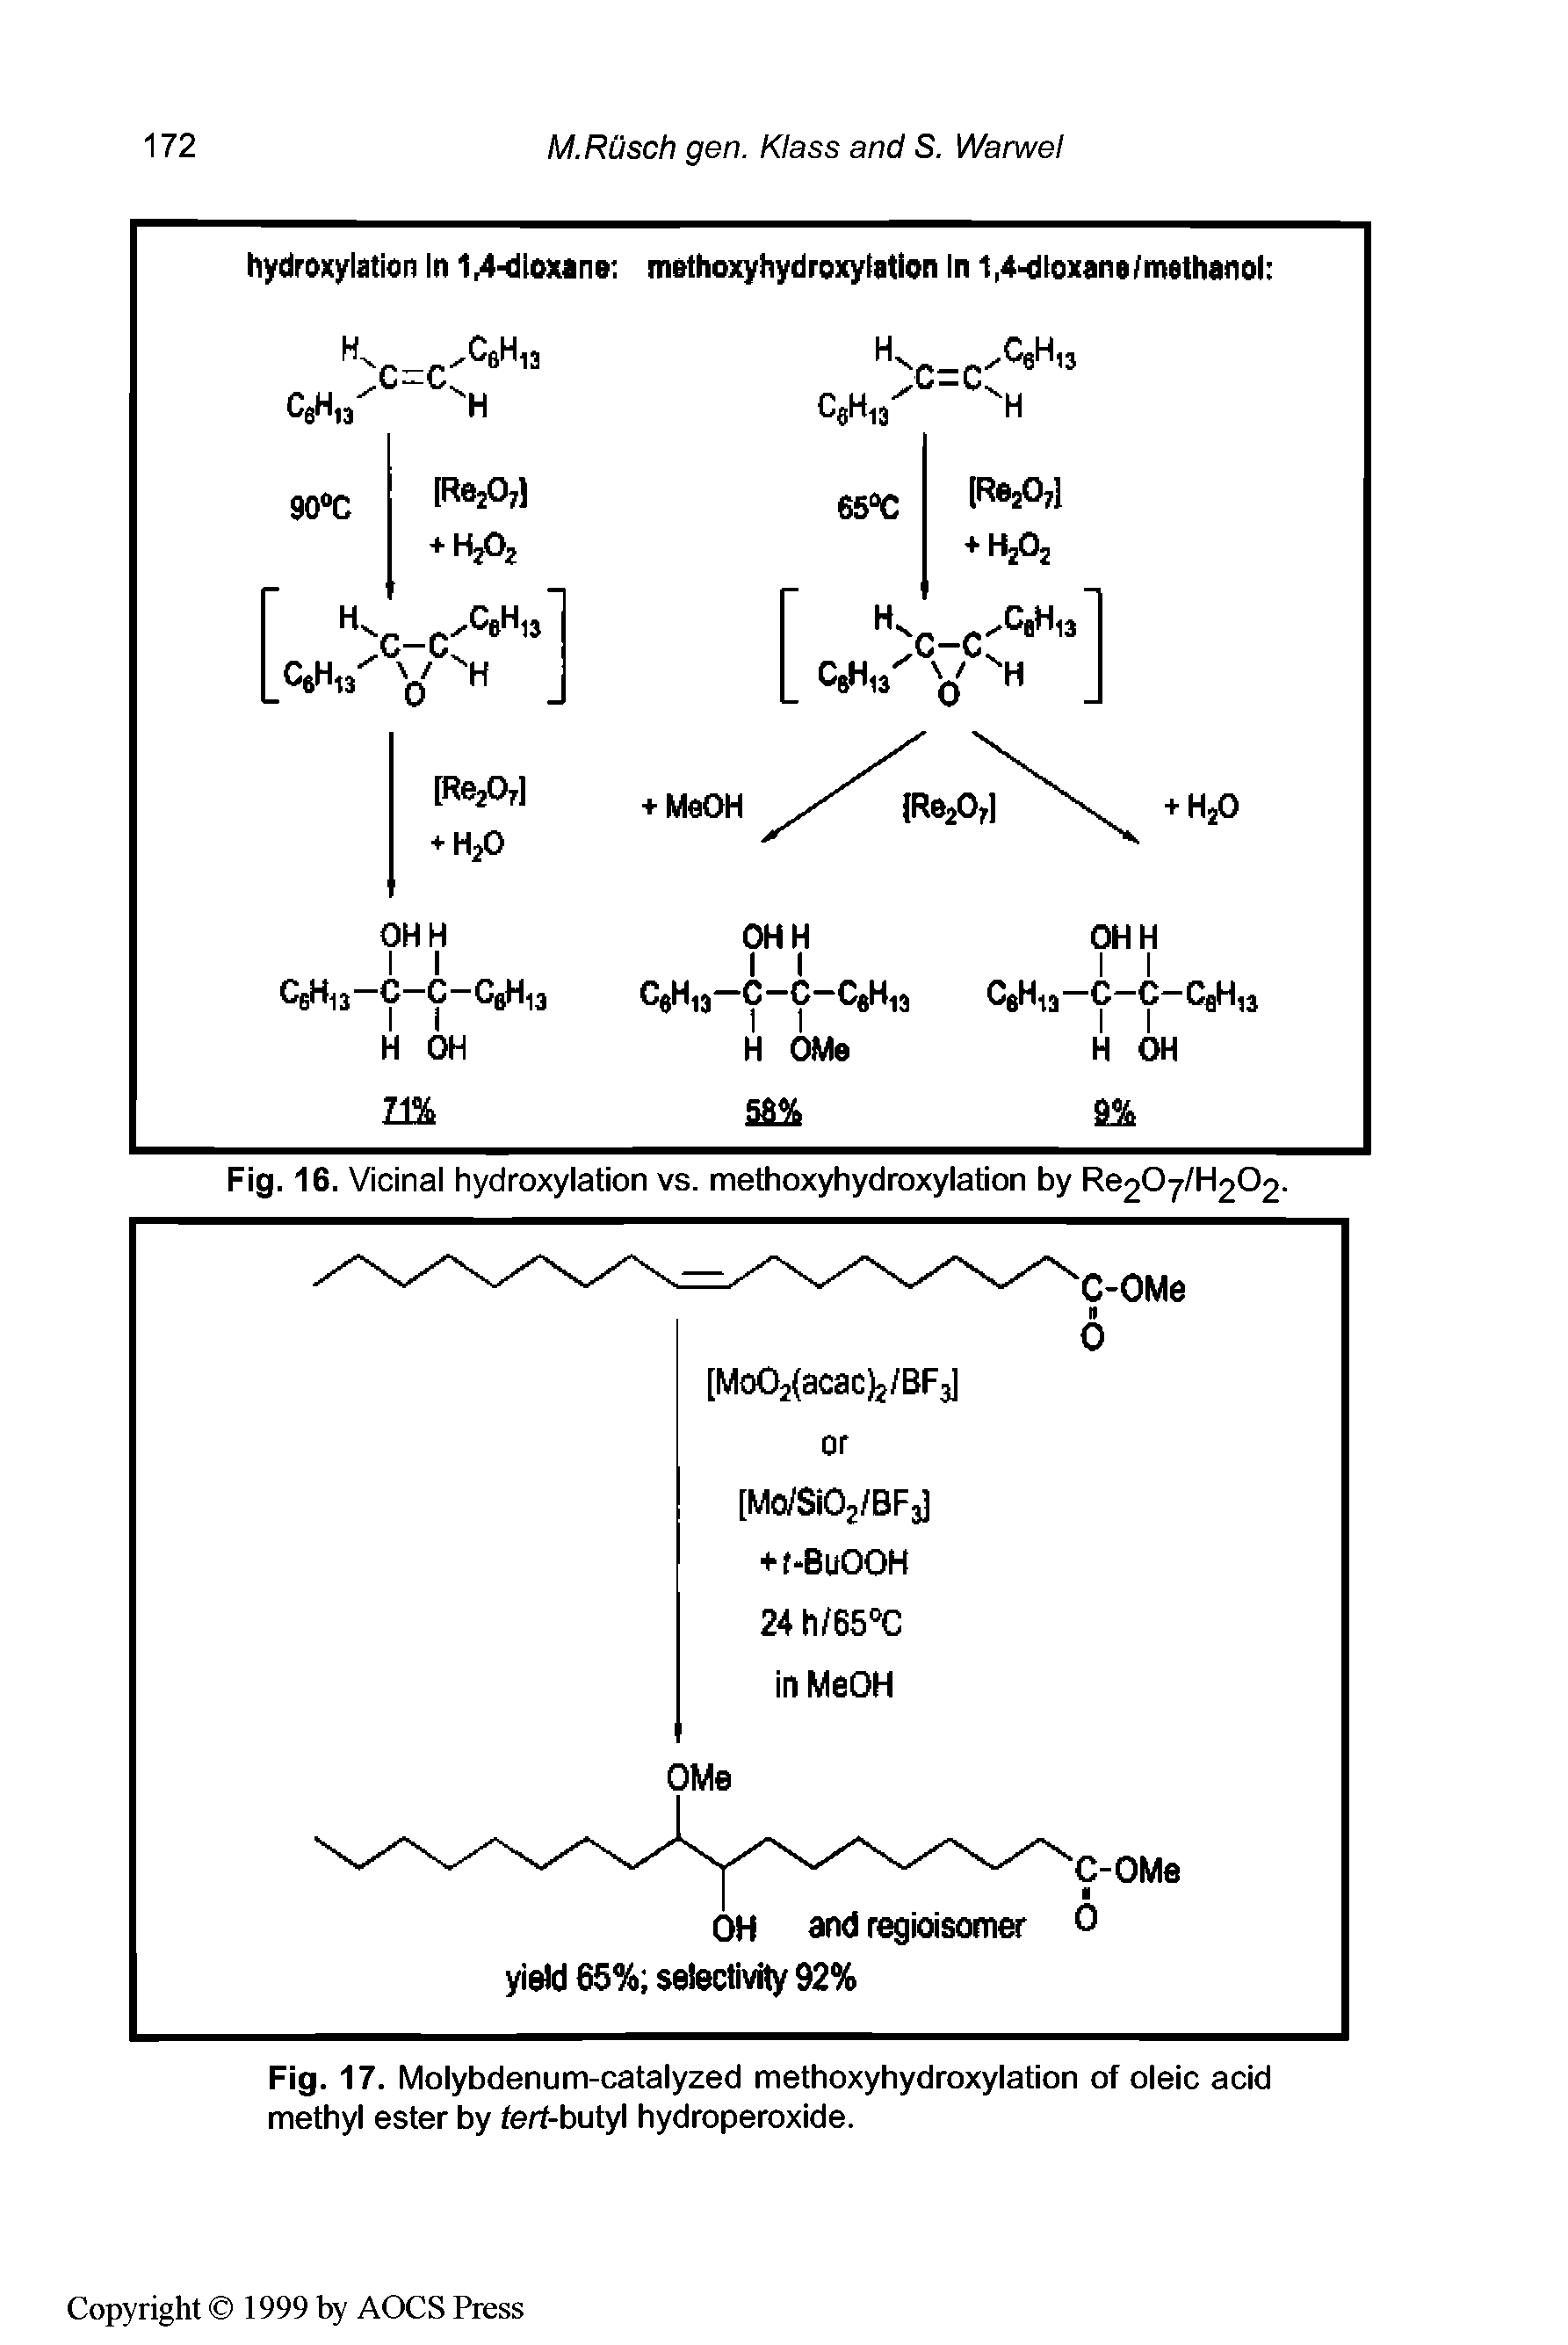 Fig. 17. Molybdenum-catalyzed methoxyhydroxylation of oleic acid methyl ester by ferf-butyl hydroperoxide.